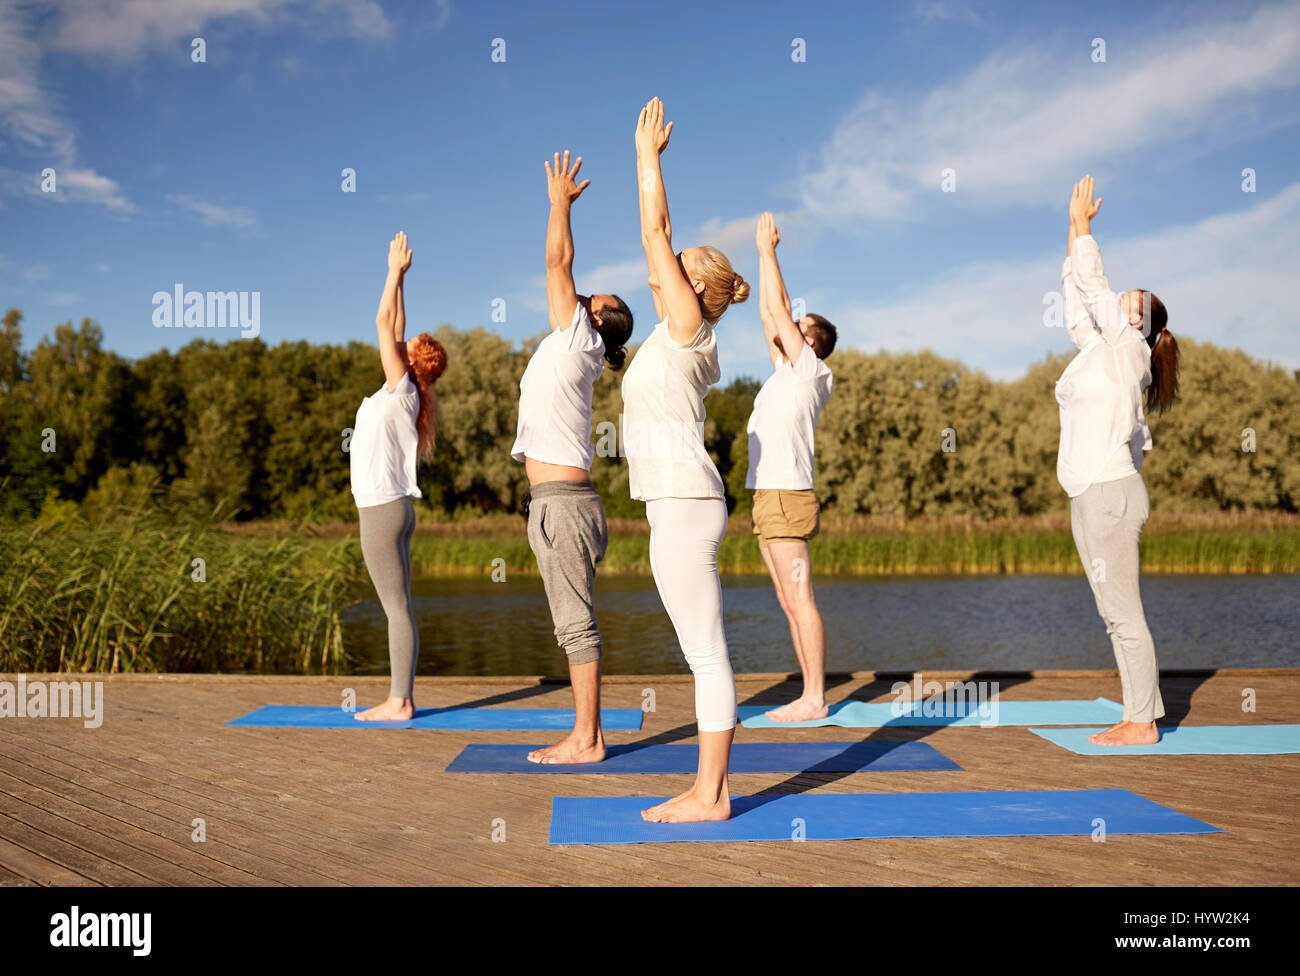 persona practicando yoga al aire libre